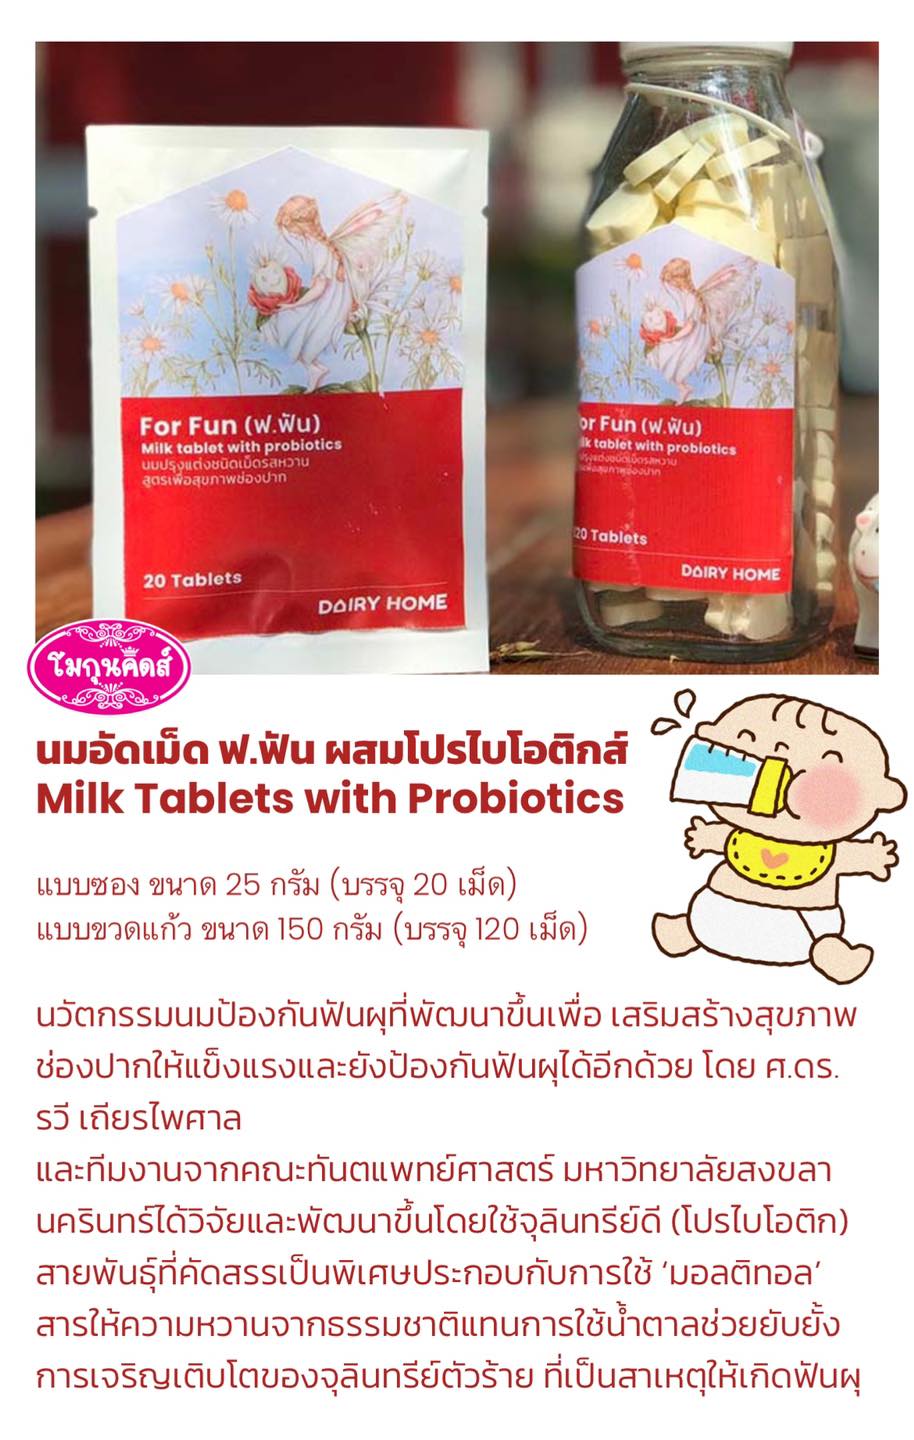 นมอัดเม็ด แดรี่โฮม FUN D Milk Tablet with Pro-Biotic Dairy home แบบซอง 25กรัม